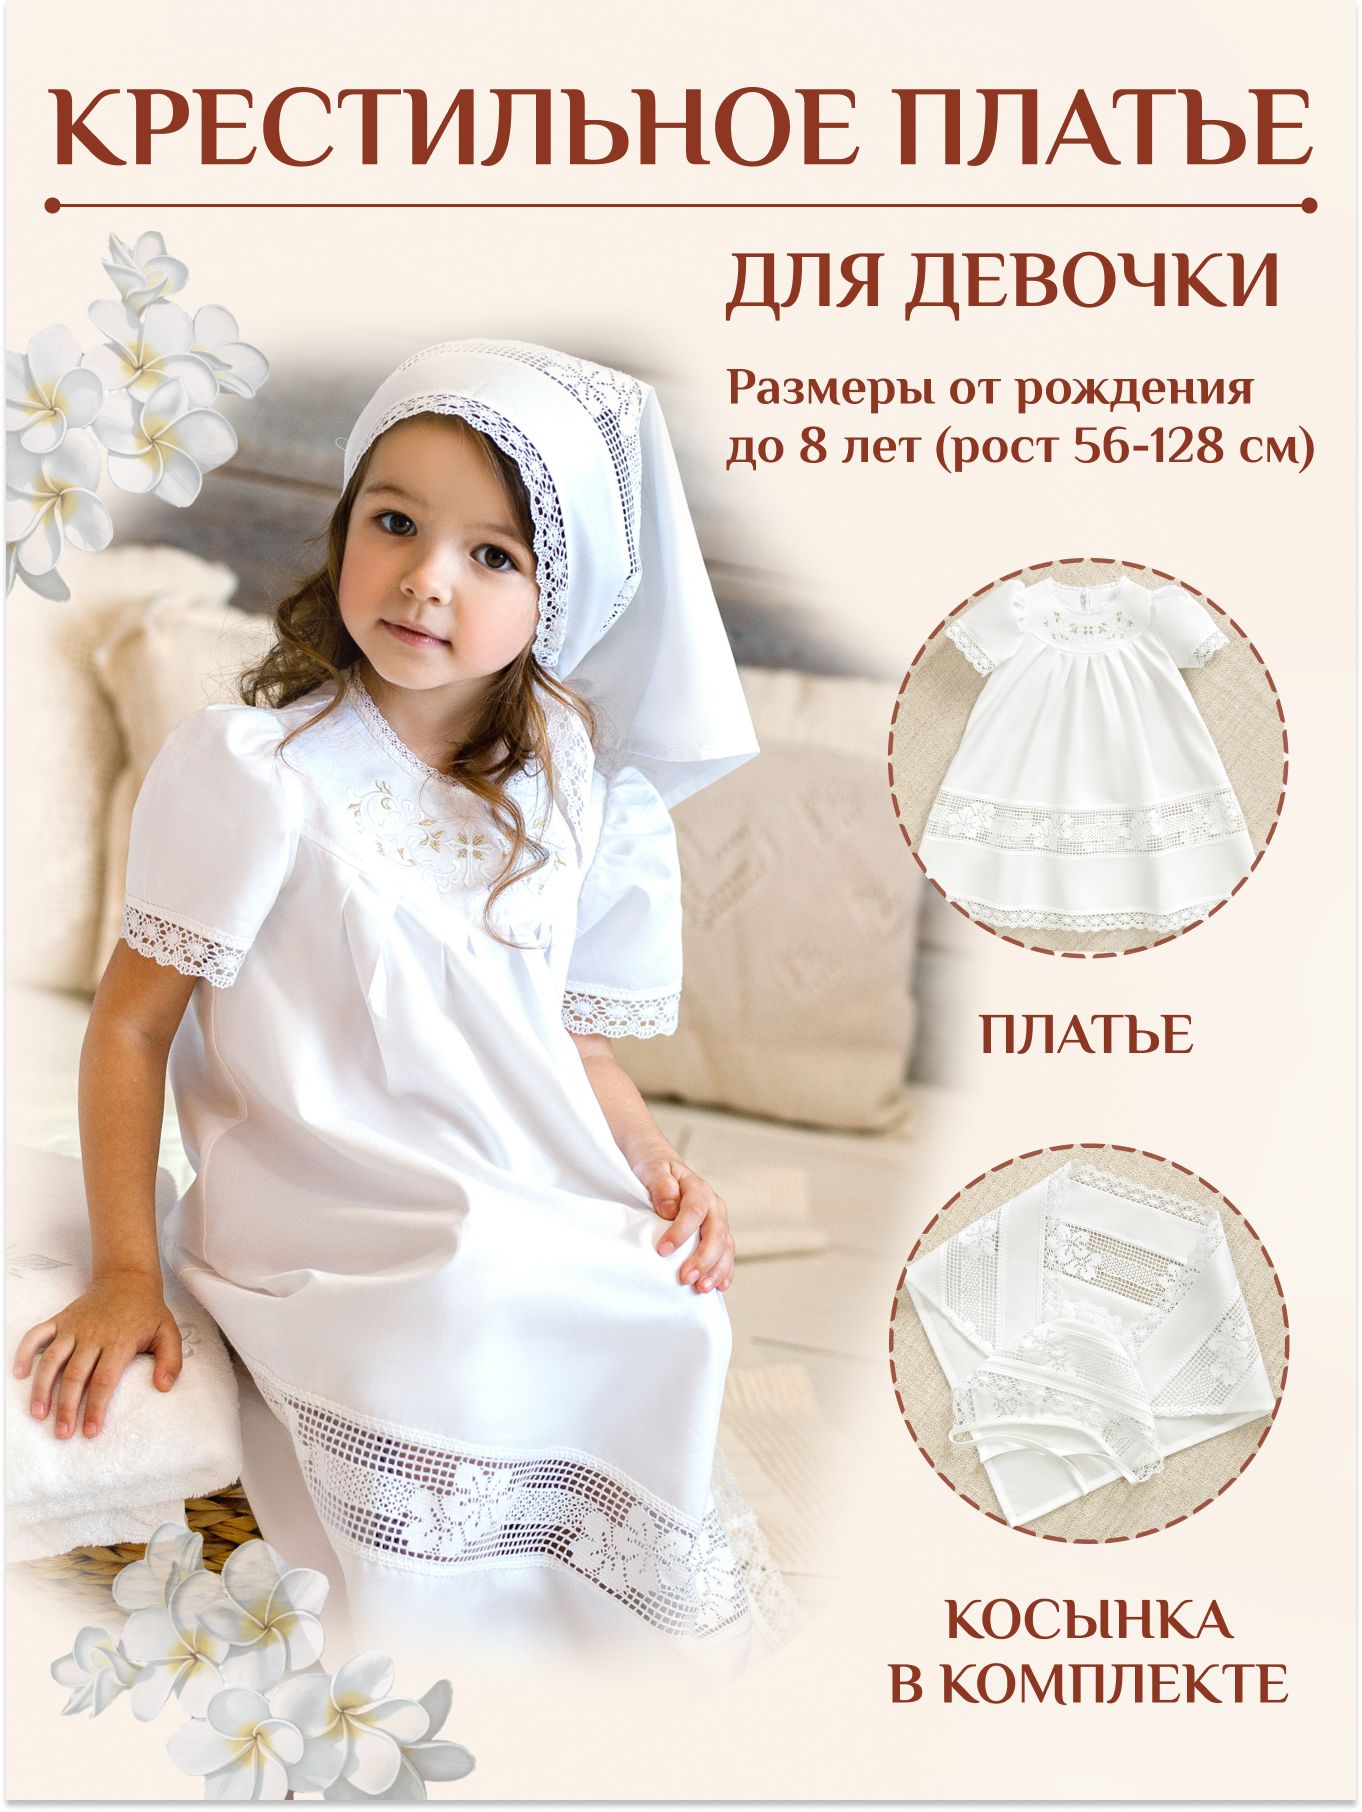 Крестильное платье крючком для девочки со схемами: крестильное платье для девочки филейной сеткой